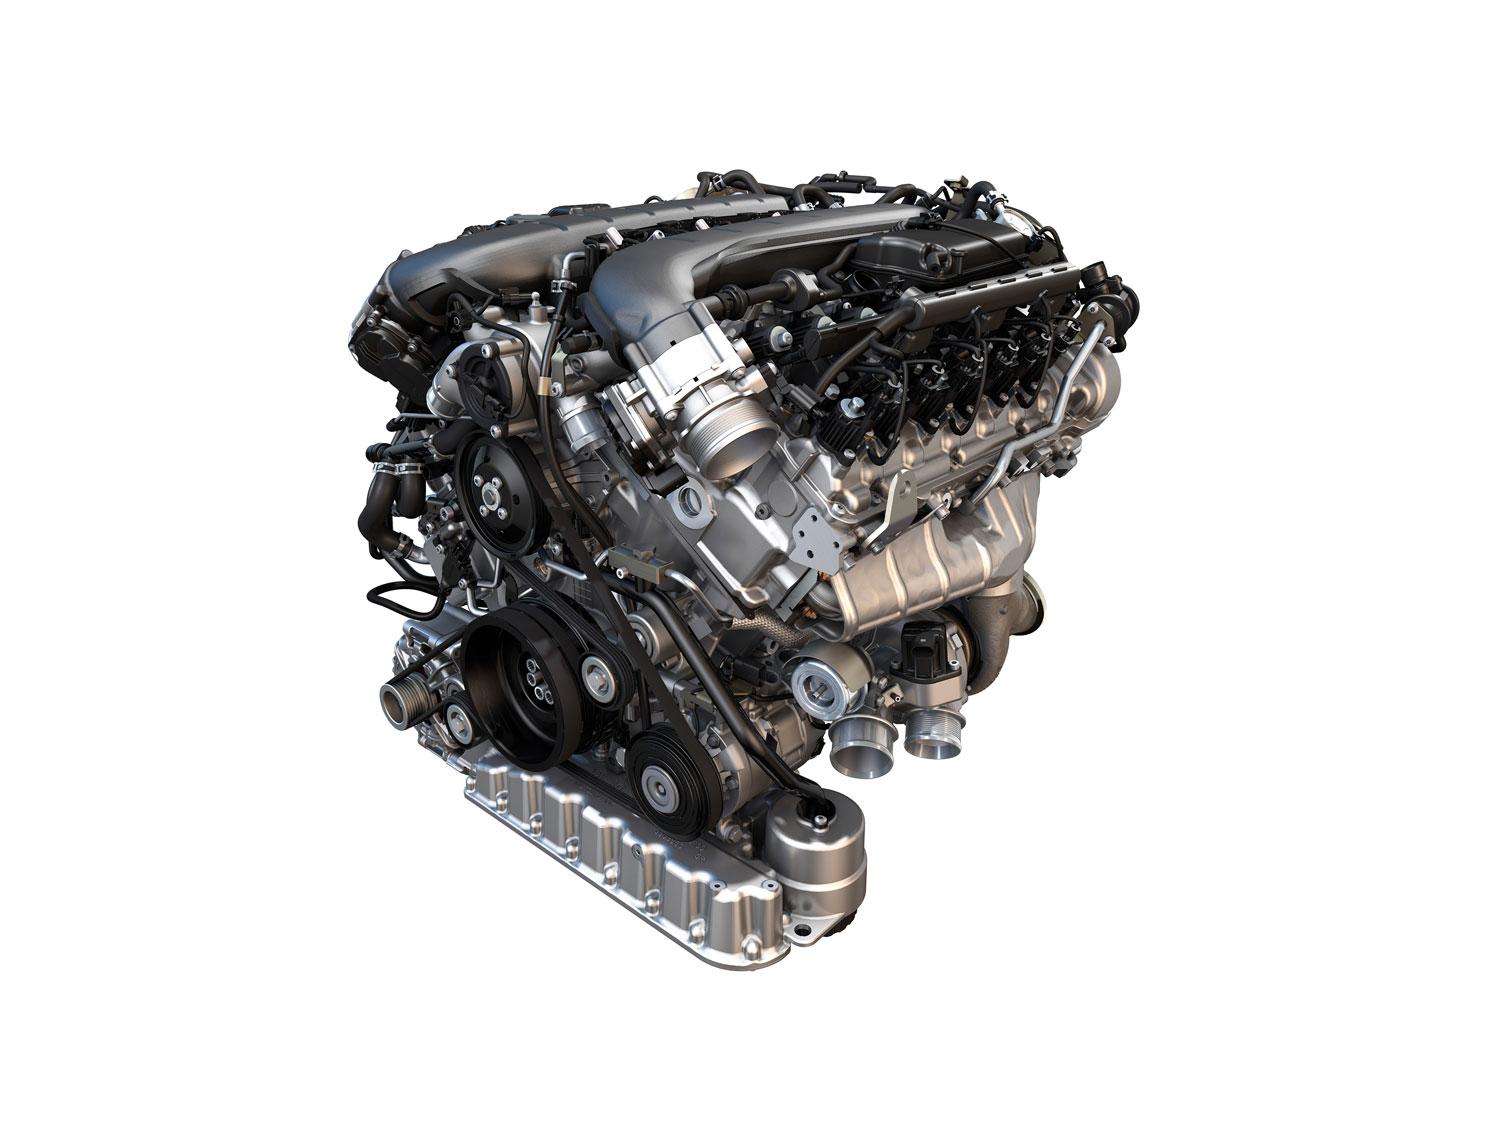 Så här ser nya W12-motorn ut. Blir första versionen som kombinerar turboladdning med direktinsprutning och cylinderavstägning.